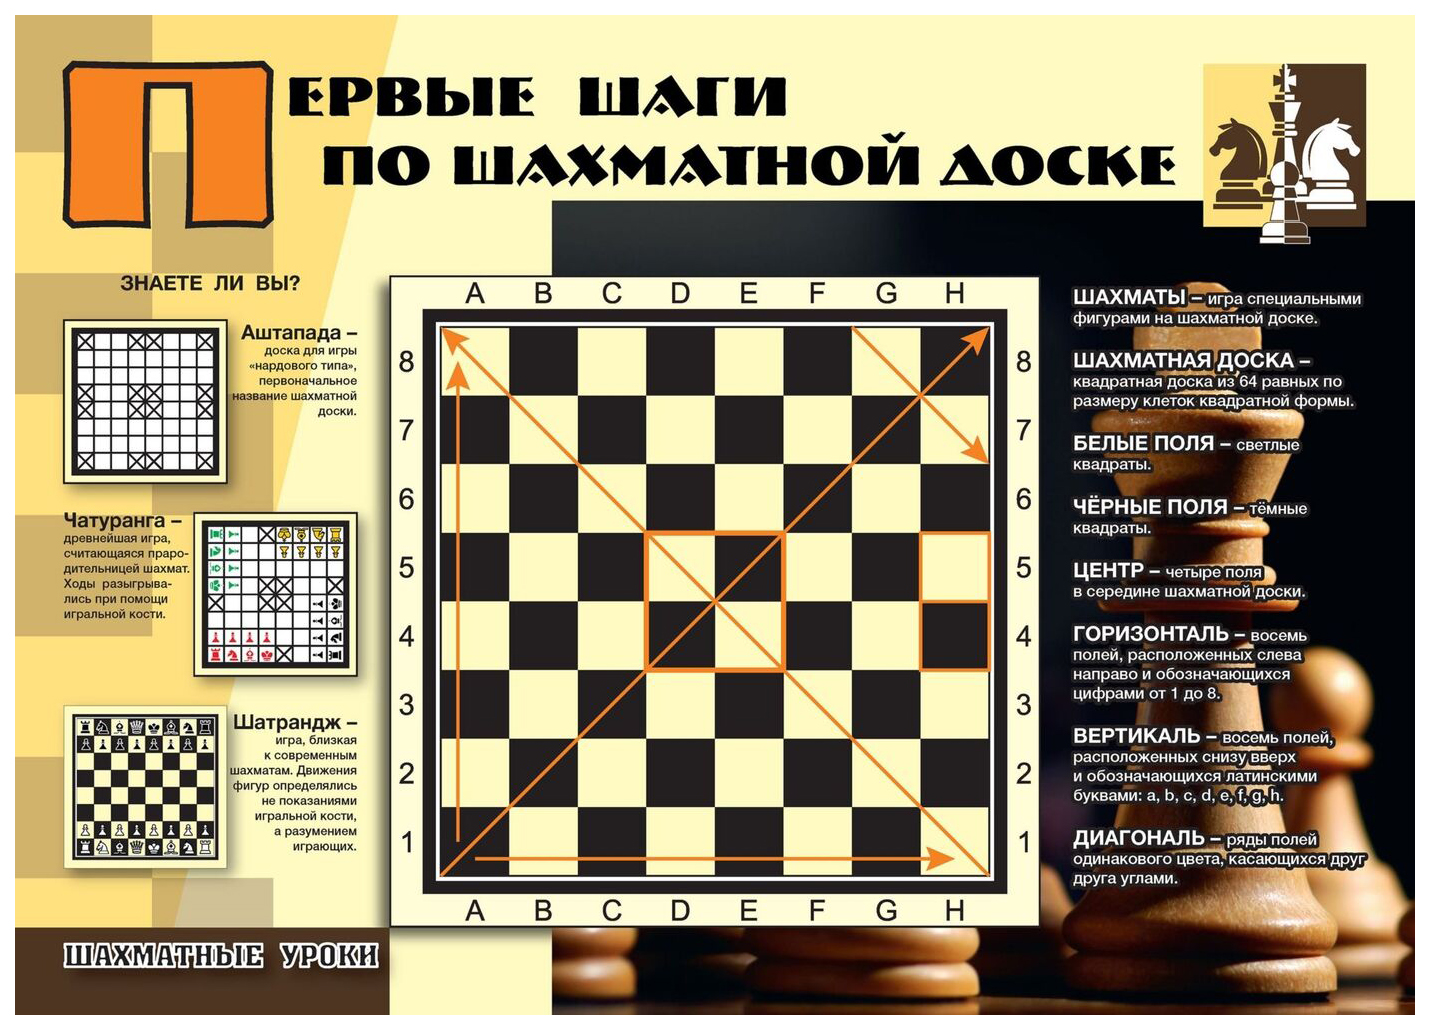 Комплект плакатов "Шахматные уроки": 4 плаката (Формат А3) с методическим сопровождением